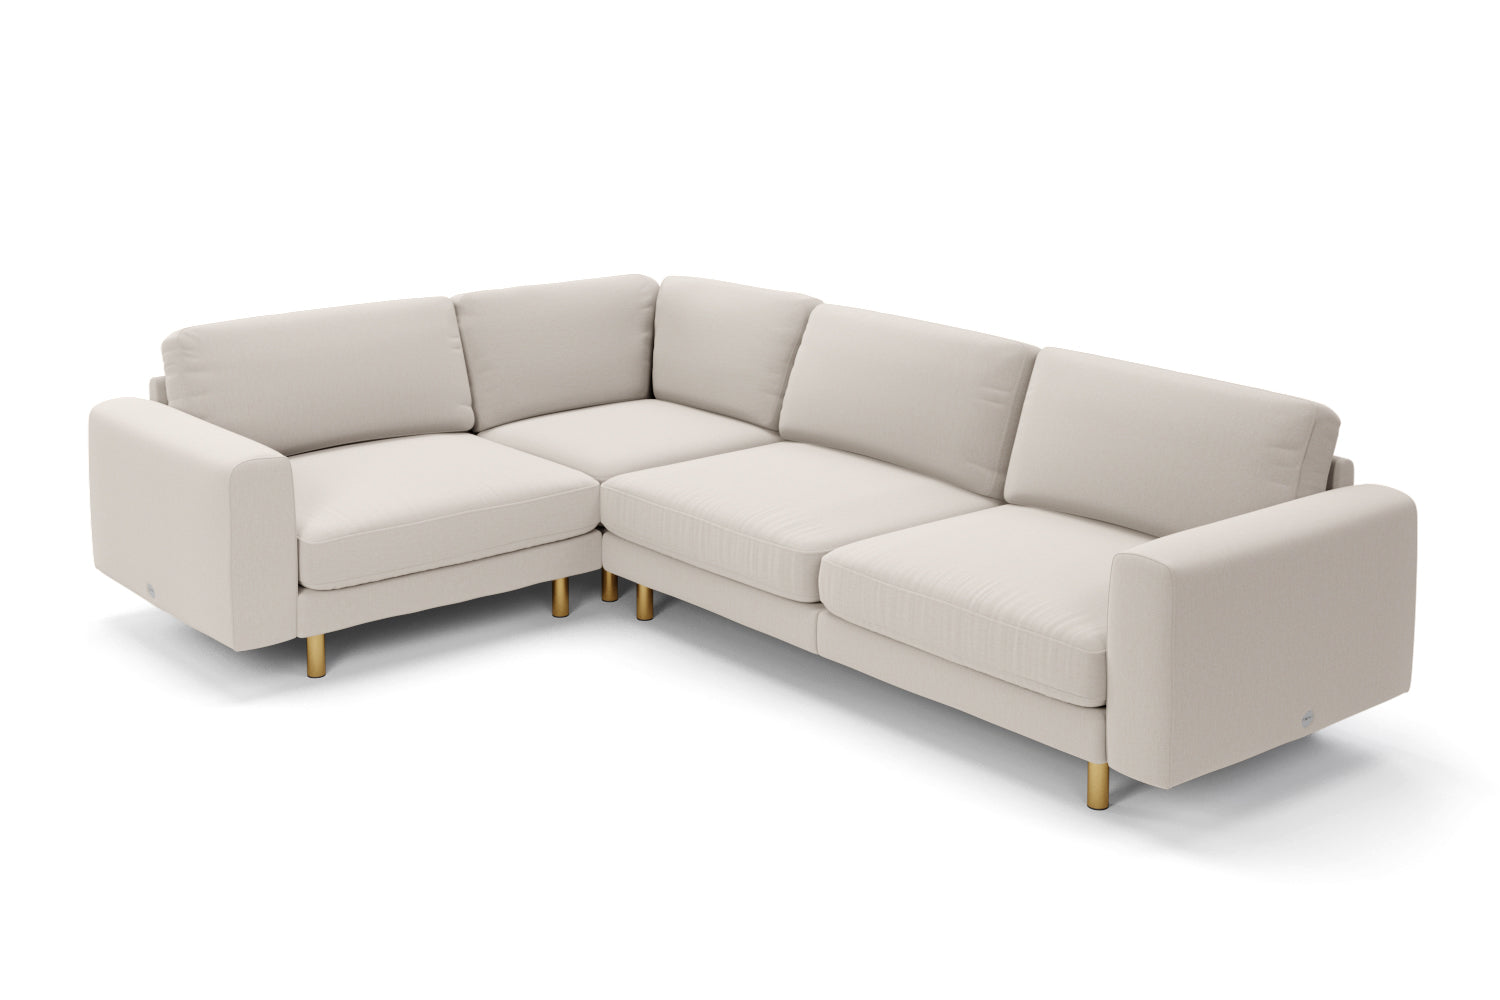 SNUG | The Big Chill Corner Sofa Medium in Biscuit